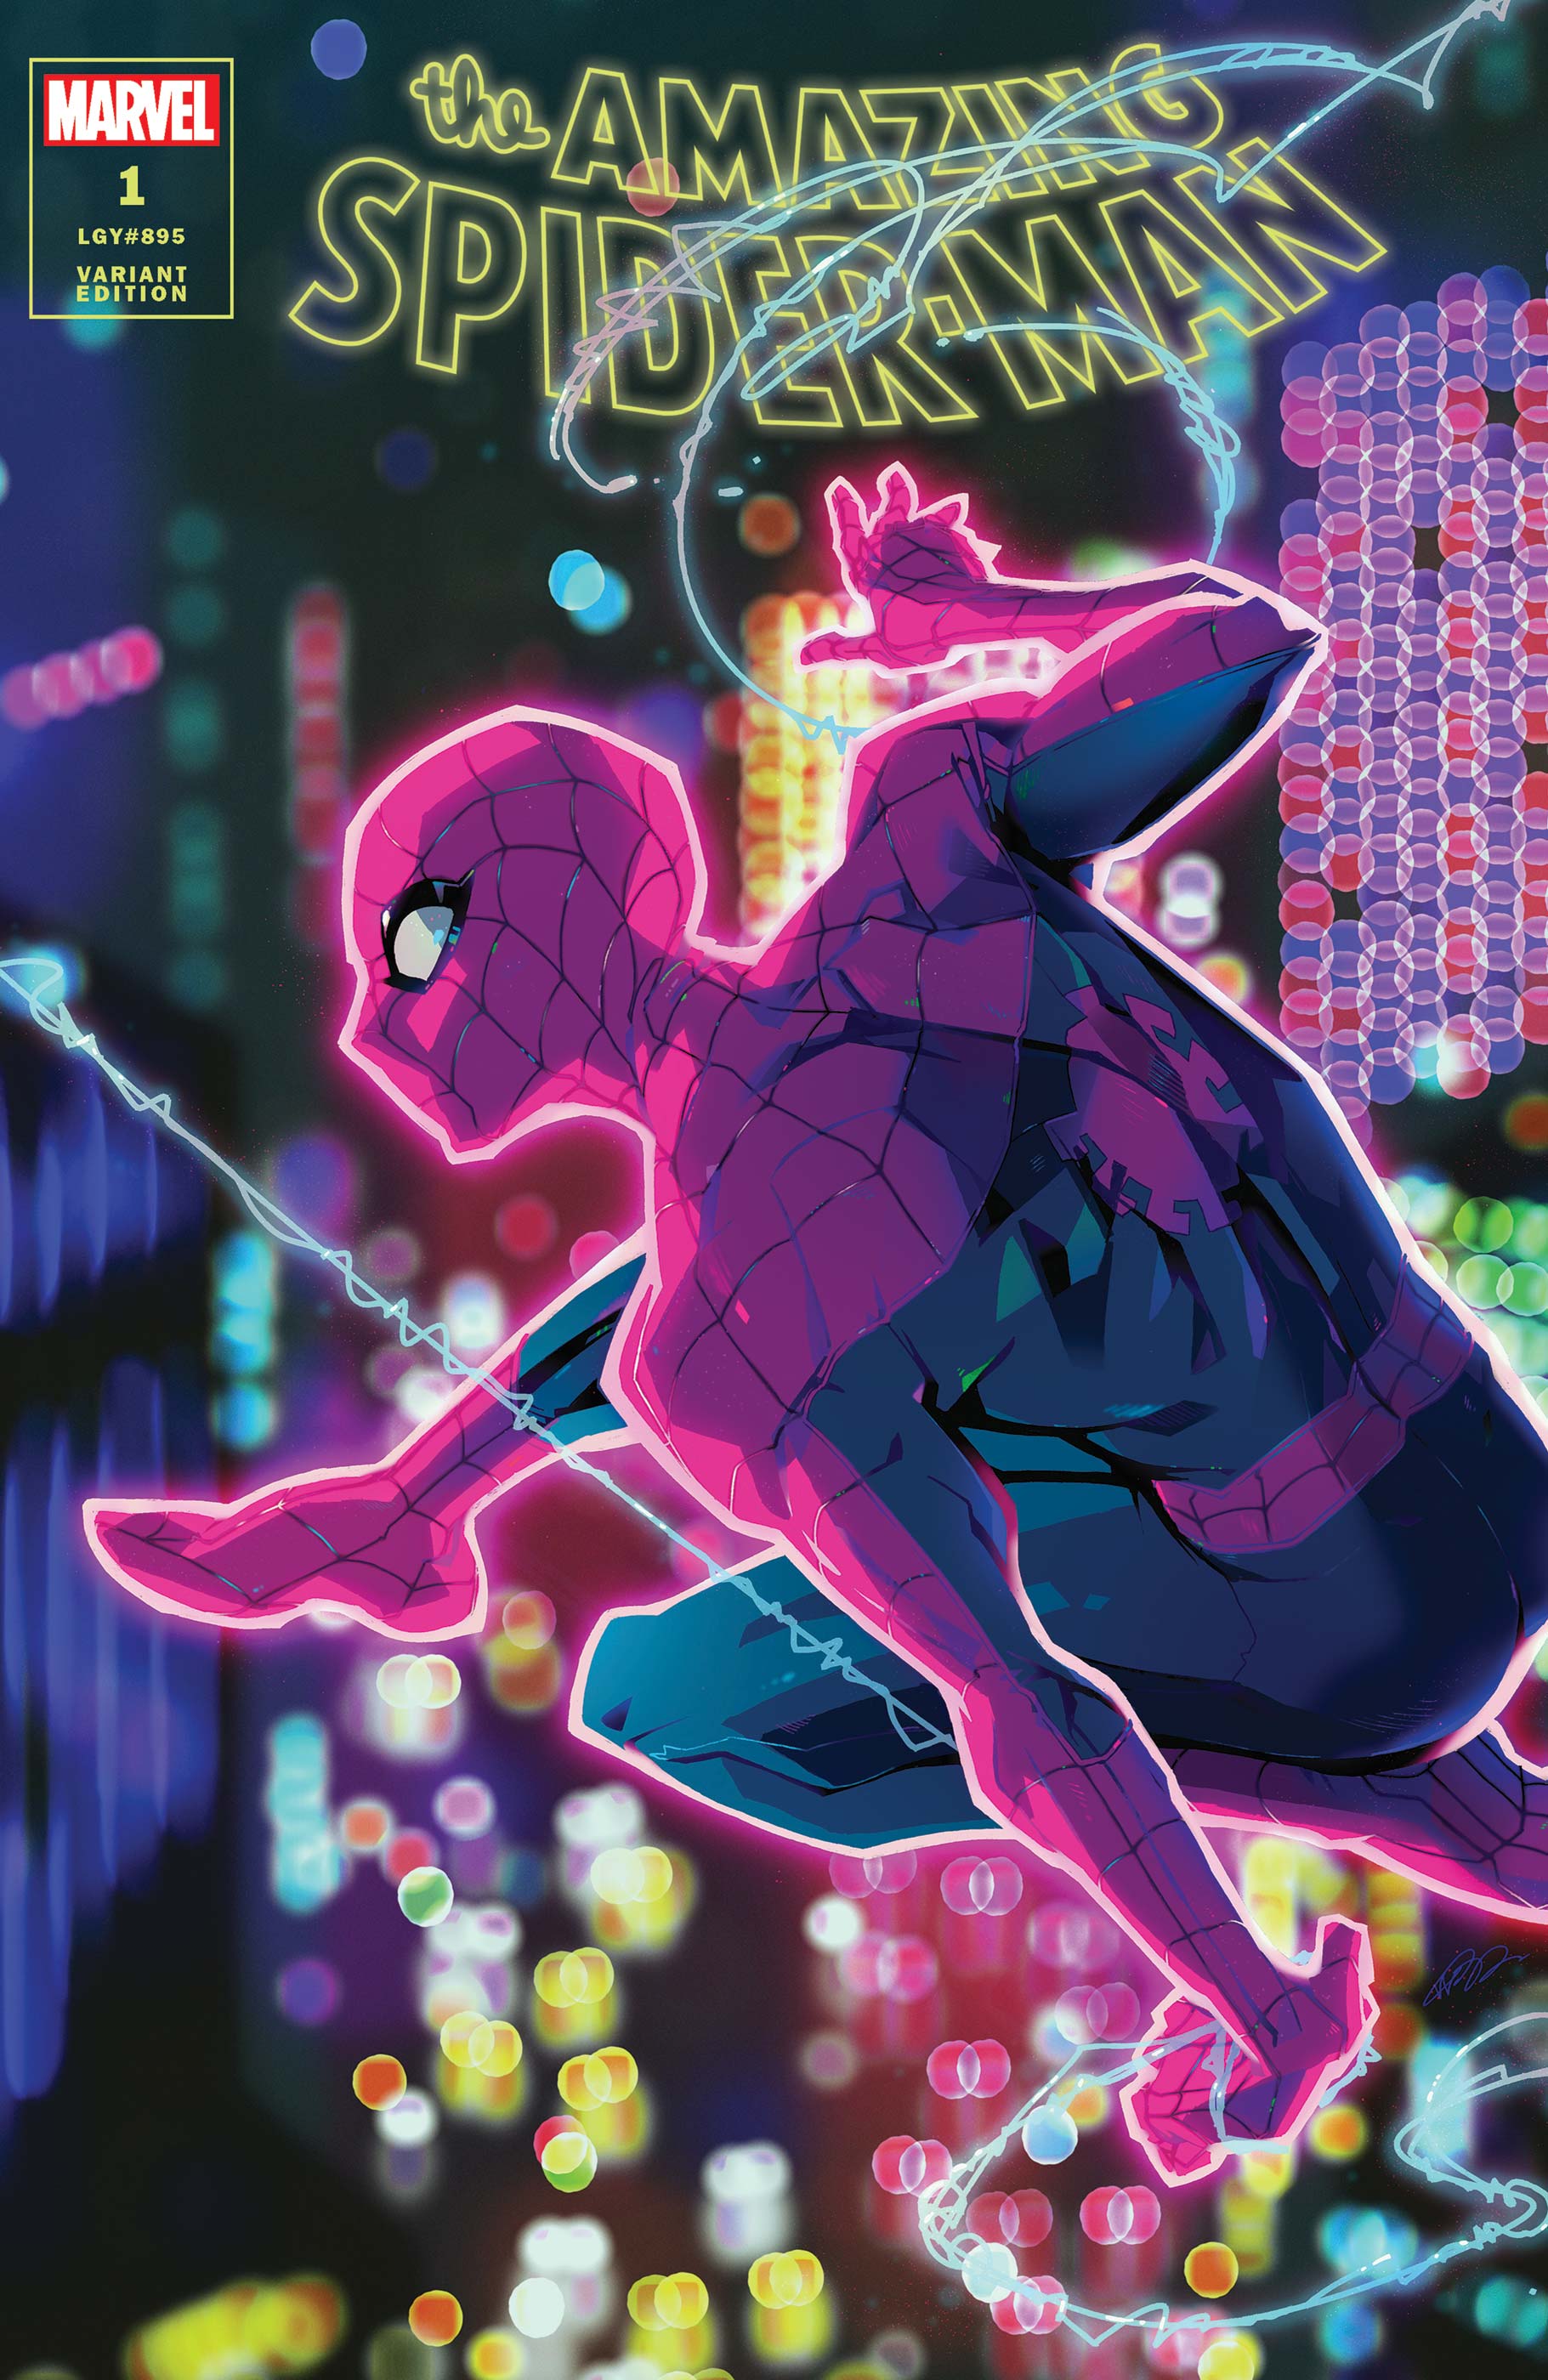 Las 6 formas de amar de Marvel. ❤️ #marvel #spiderman #detalles